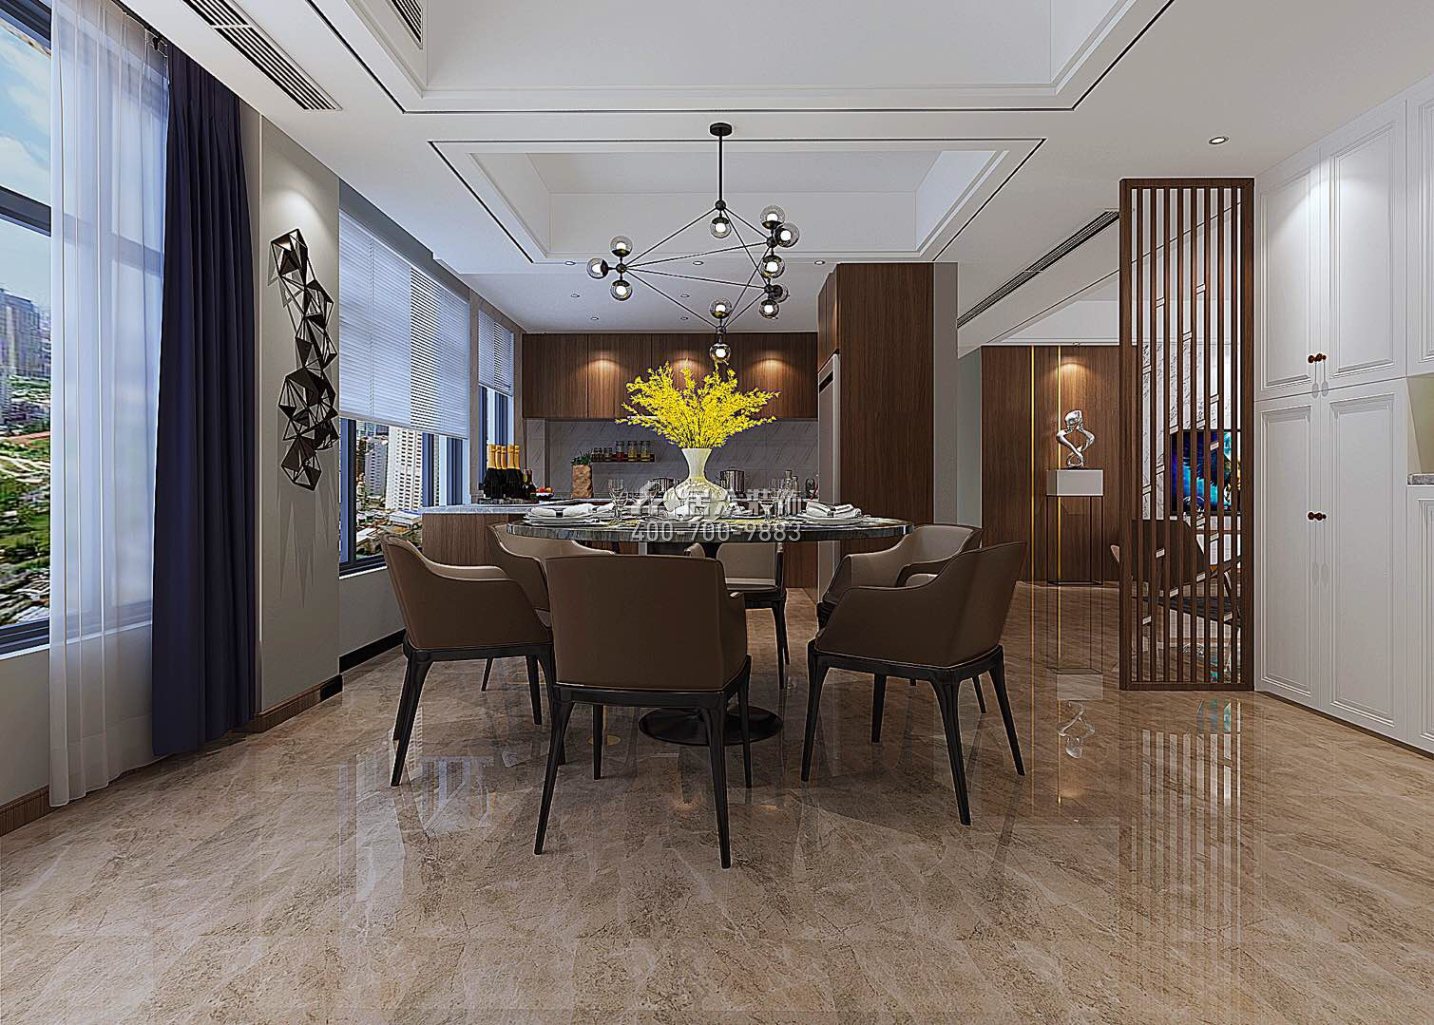 匯景城144平方米現代簡約風格平層戶型餐廳裝修效果圖